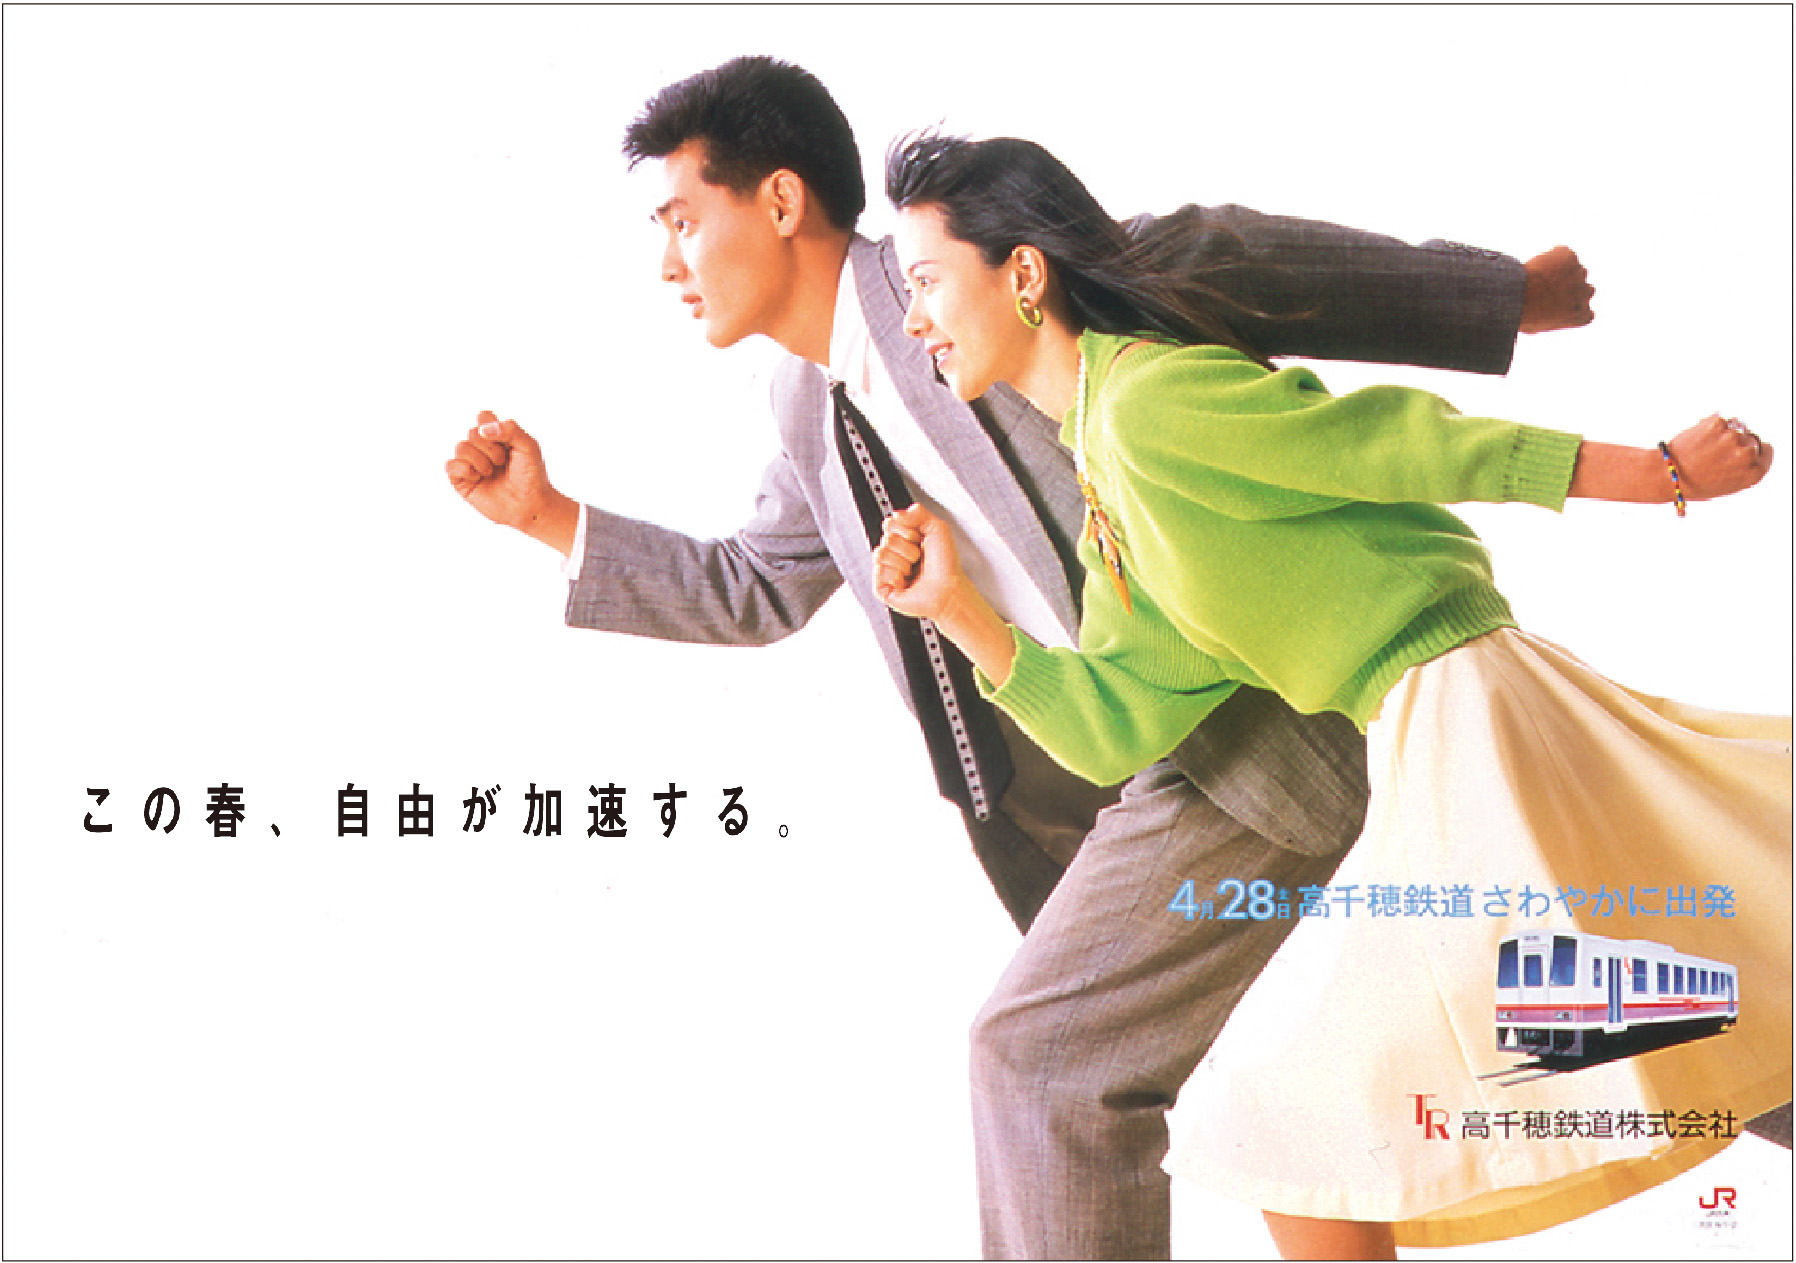 高千穂鉄道のポスター。風を受ける男女